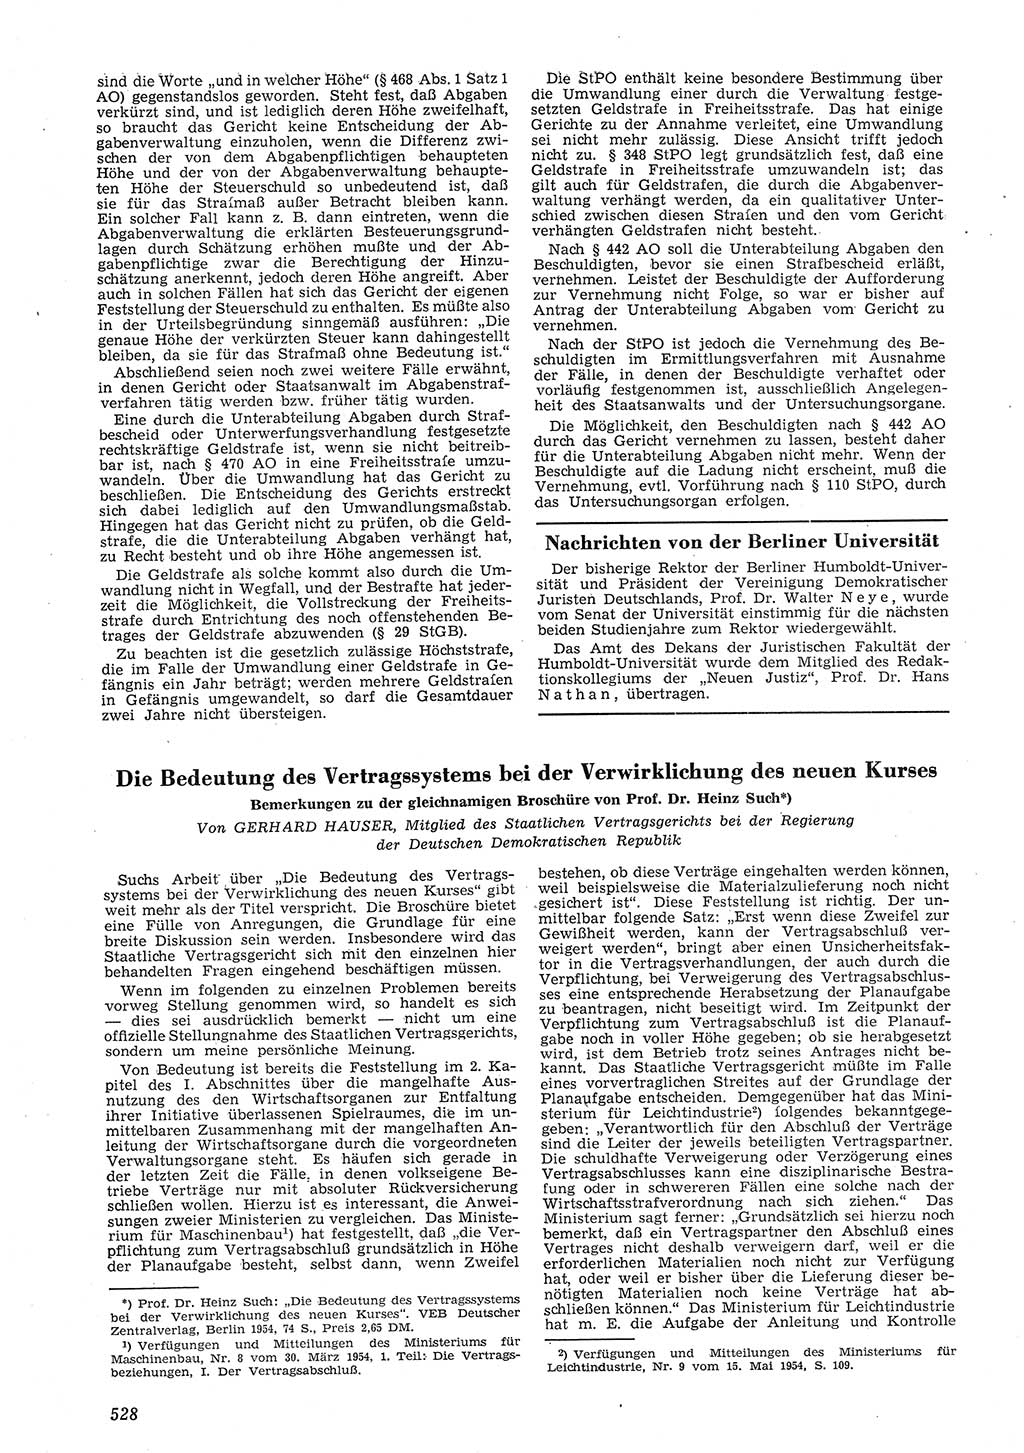 Neue Justiz (NJ), Zeitschrift für Recht und Rechtswissenschaft [Deutsche Demokratische Republik (DDR)], 8. Jahrgang 1954, Seite 528 (NJ DDR 1954, S. 528)